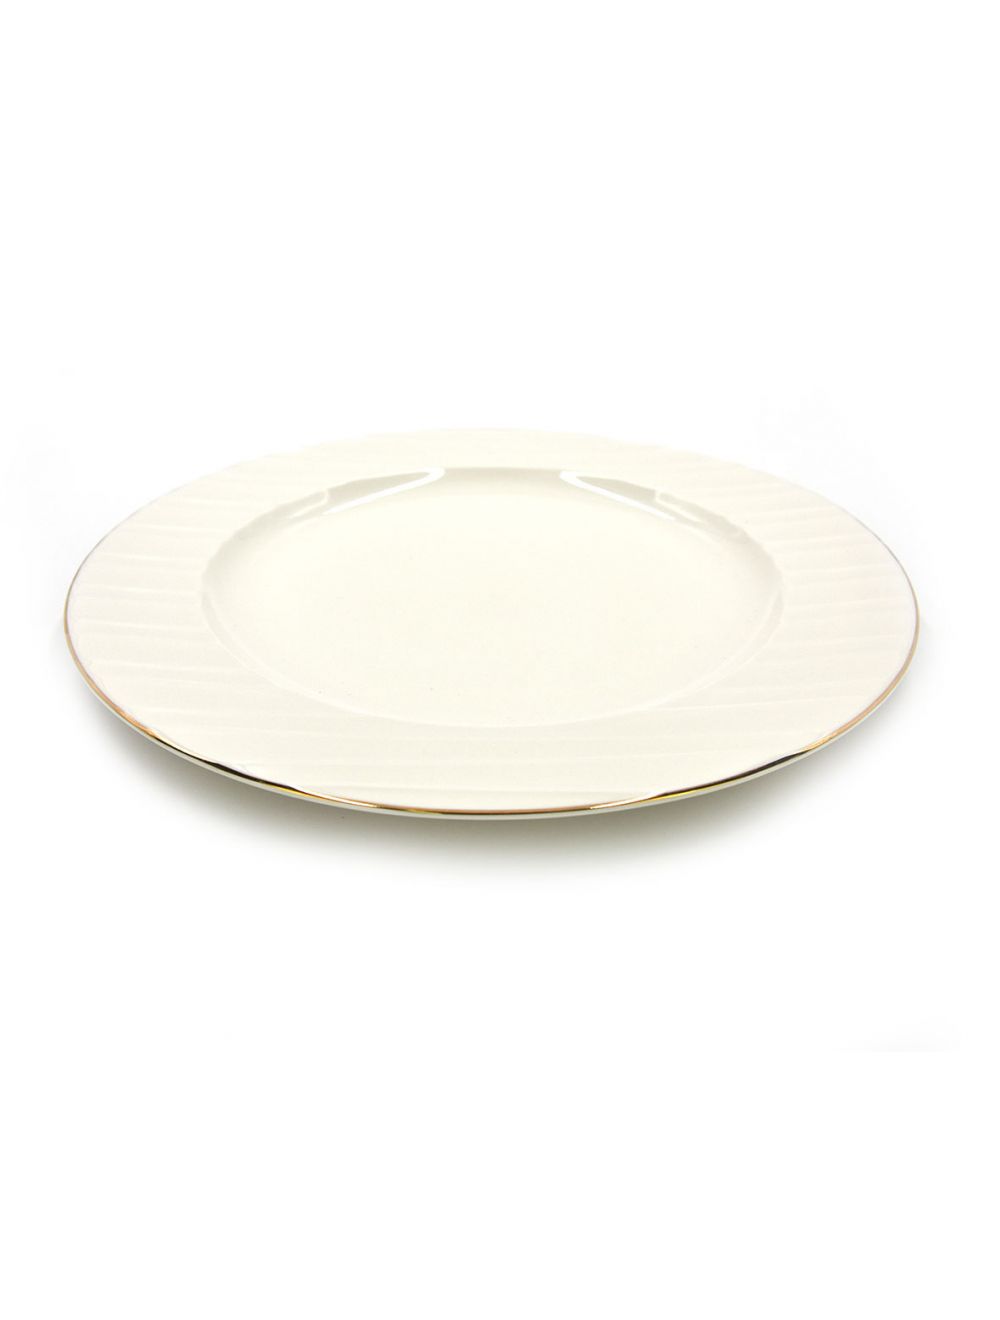 Qualitier Round Platter 34 cm Gold/White